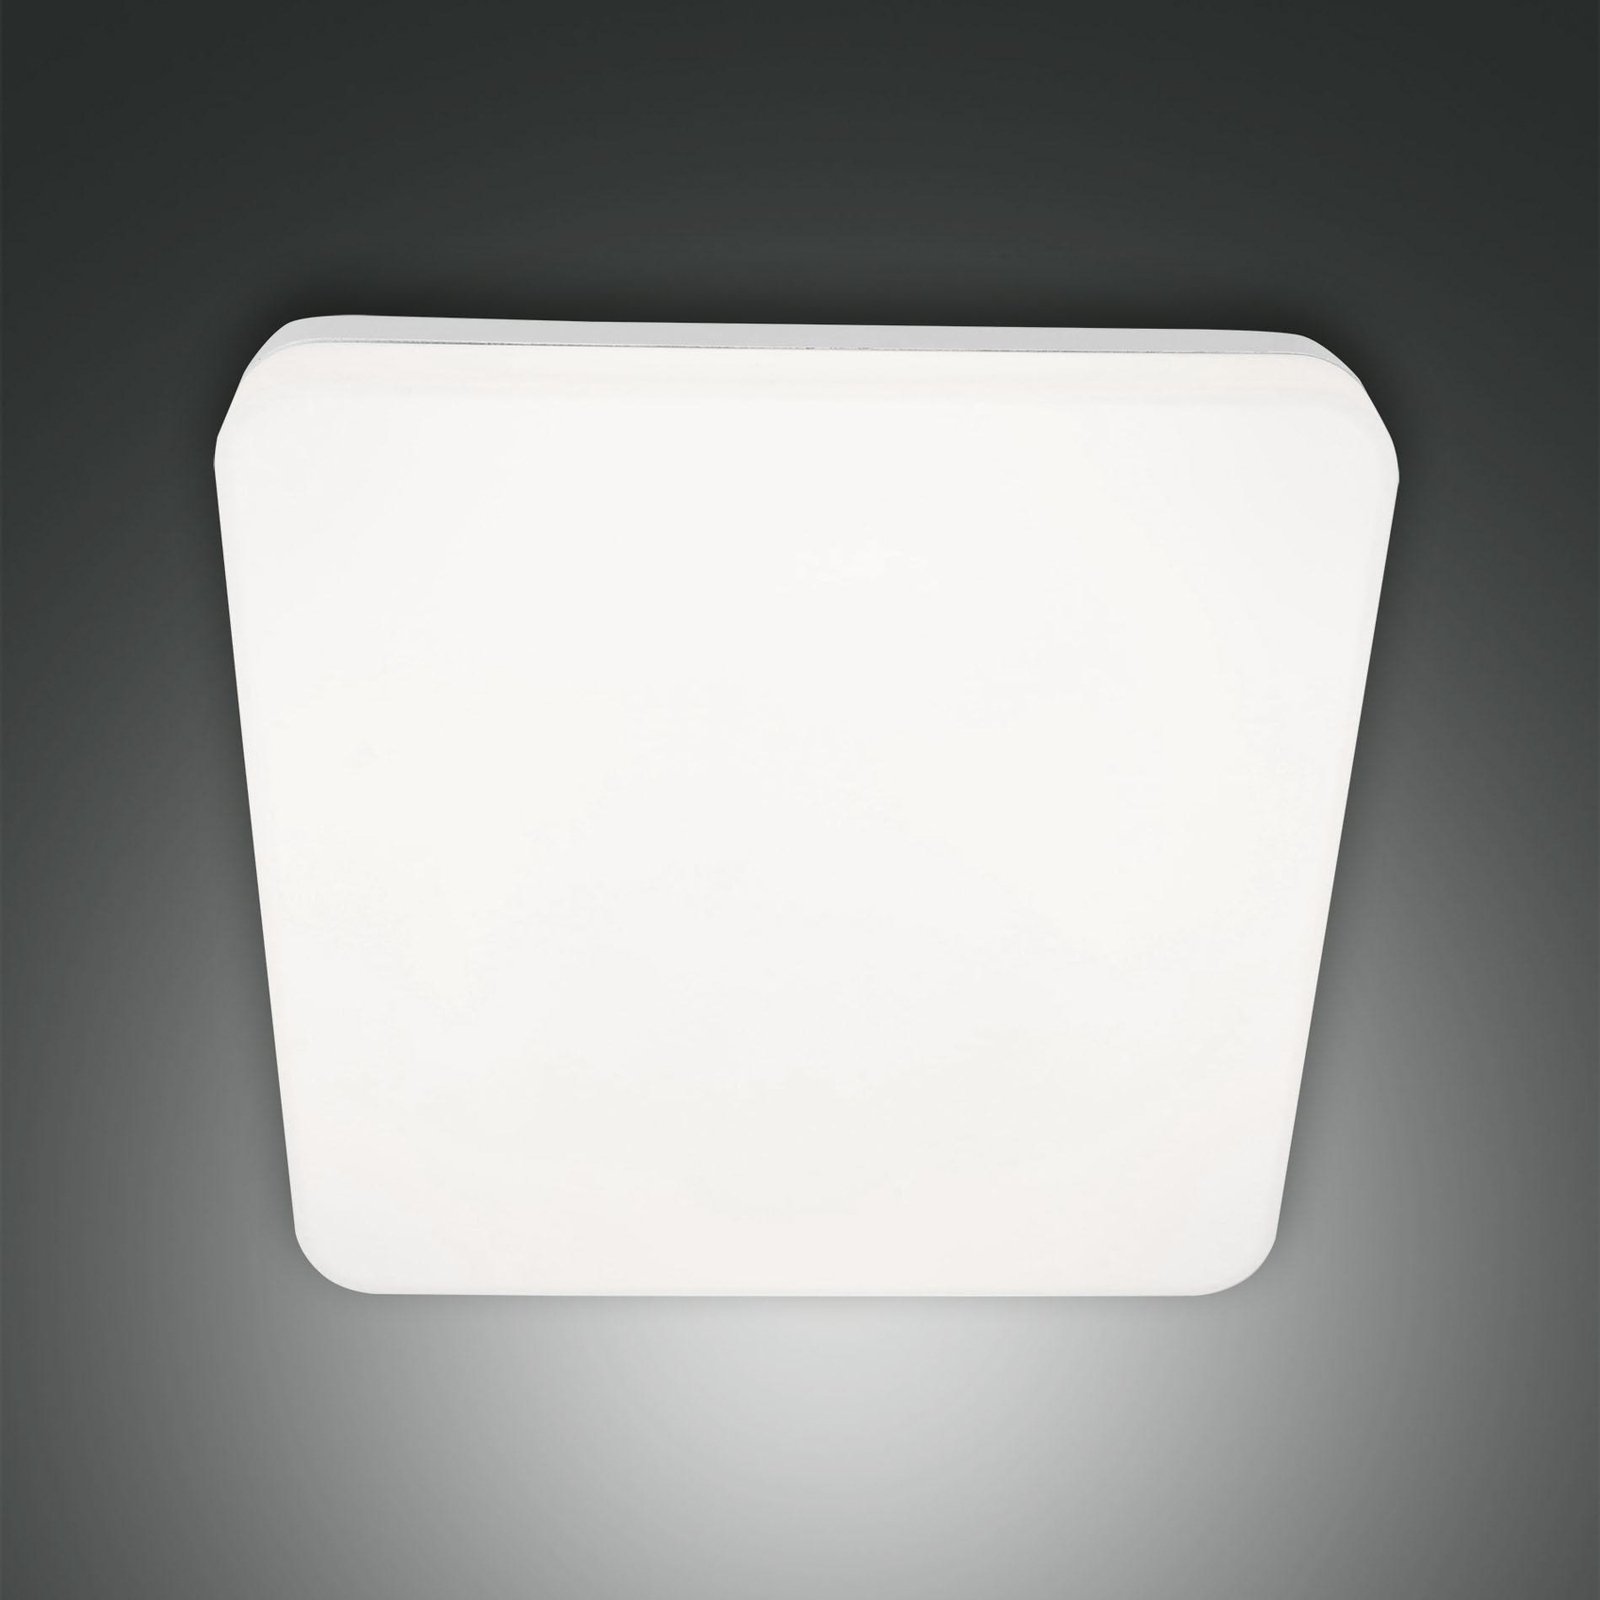 Folk LED ulkokattovalaisin, 28 cm x 28 cm, valkoinen, IP65